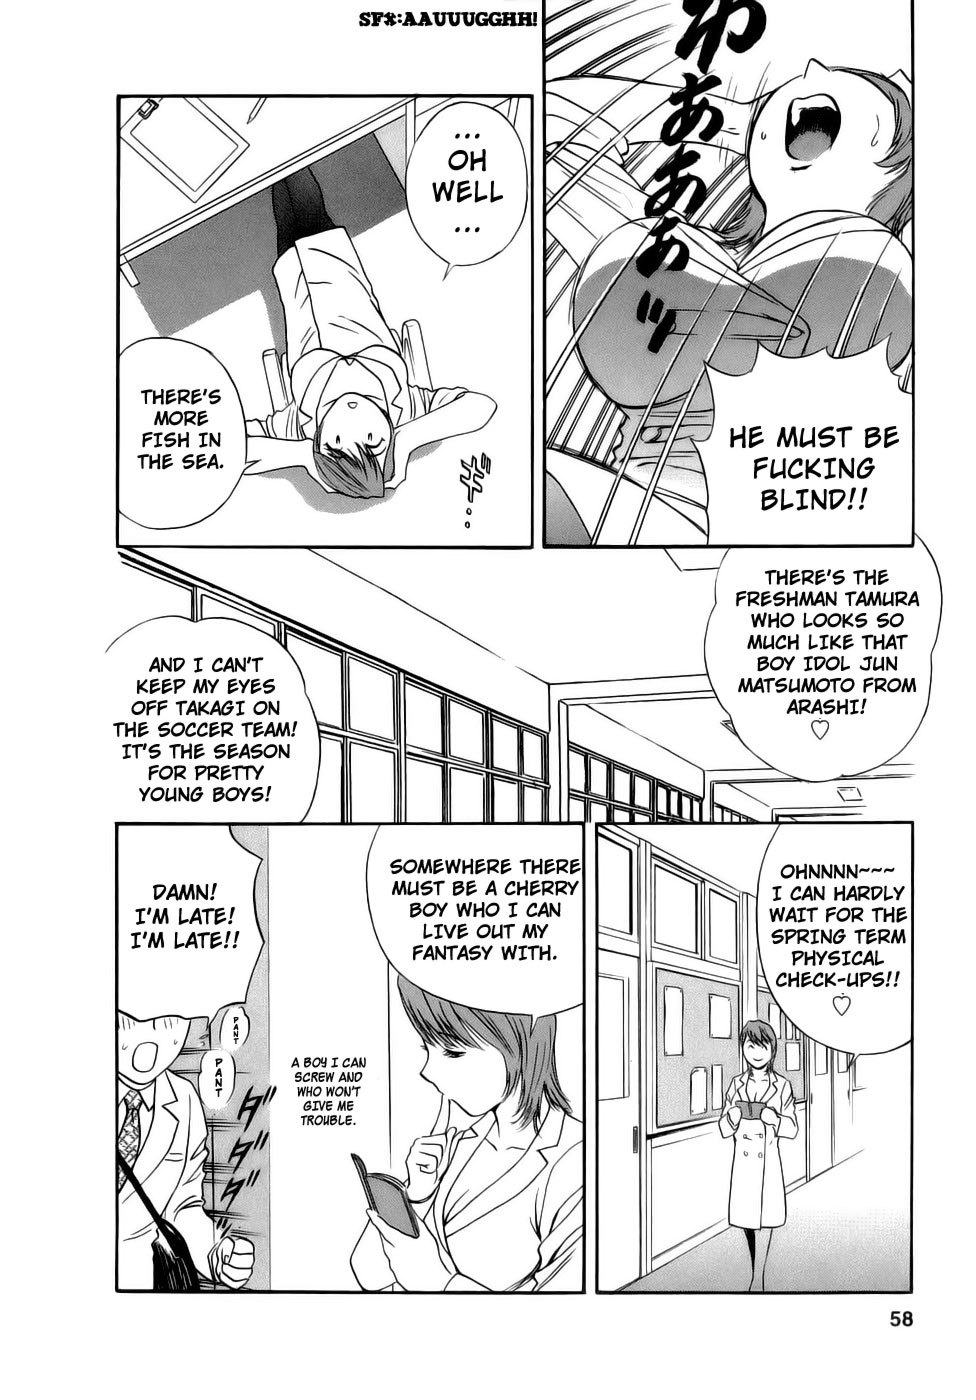 Mo-Retsu! Boin SenseiVol.1 58 hentai manga